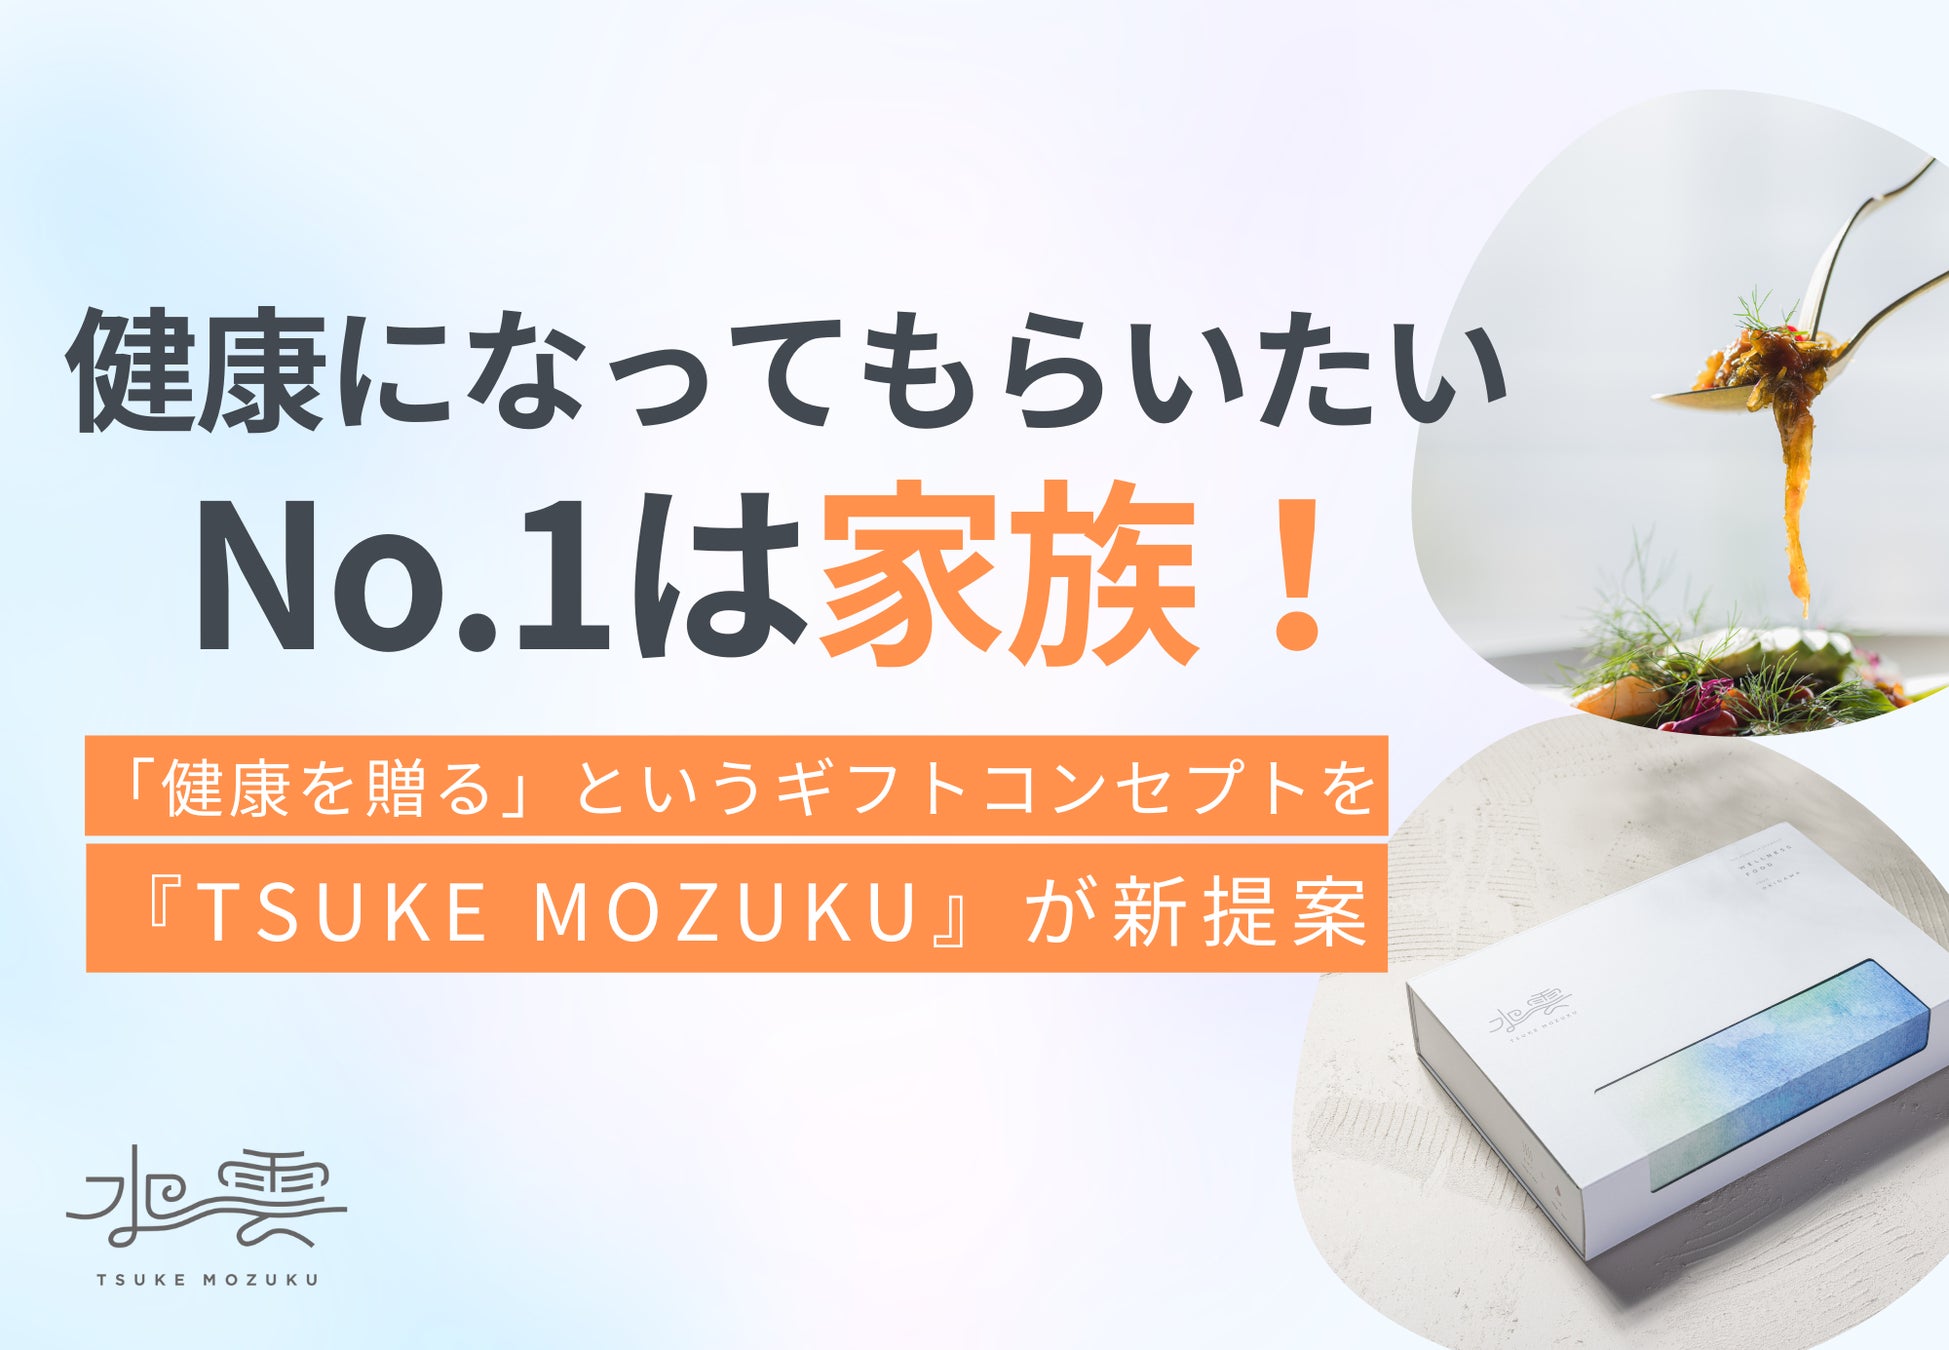 「米粉料理を作って豪華景品を当てようキャンペーン」2023年9月21日(木)より開催　